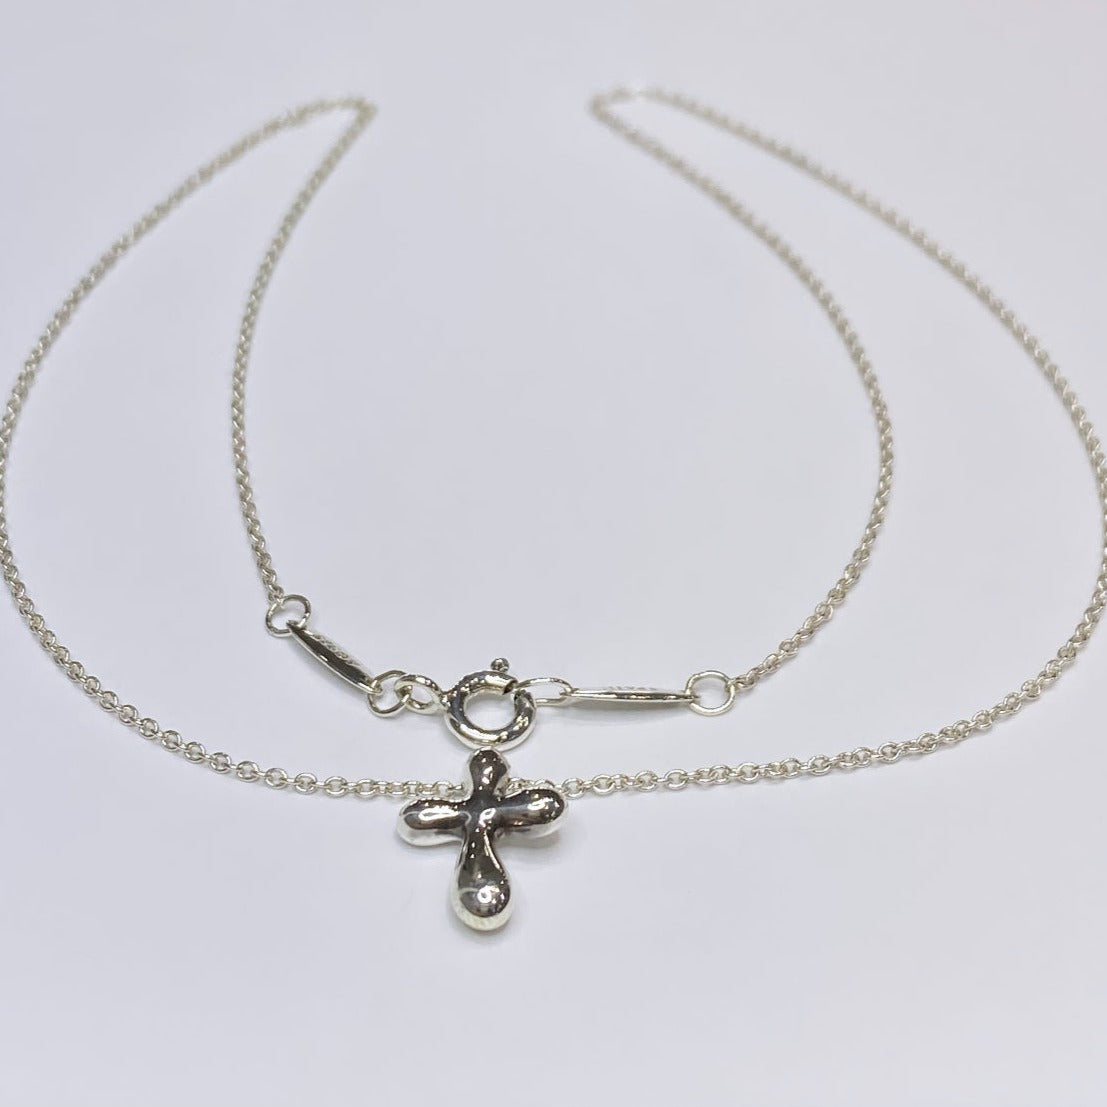 T & Co. Elsa Peretti Small Cross Necklace